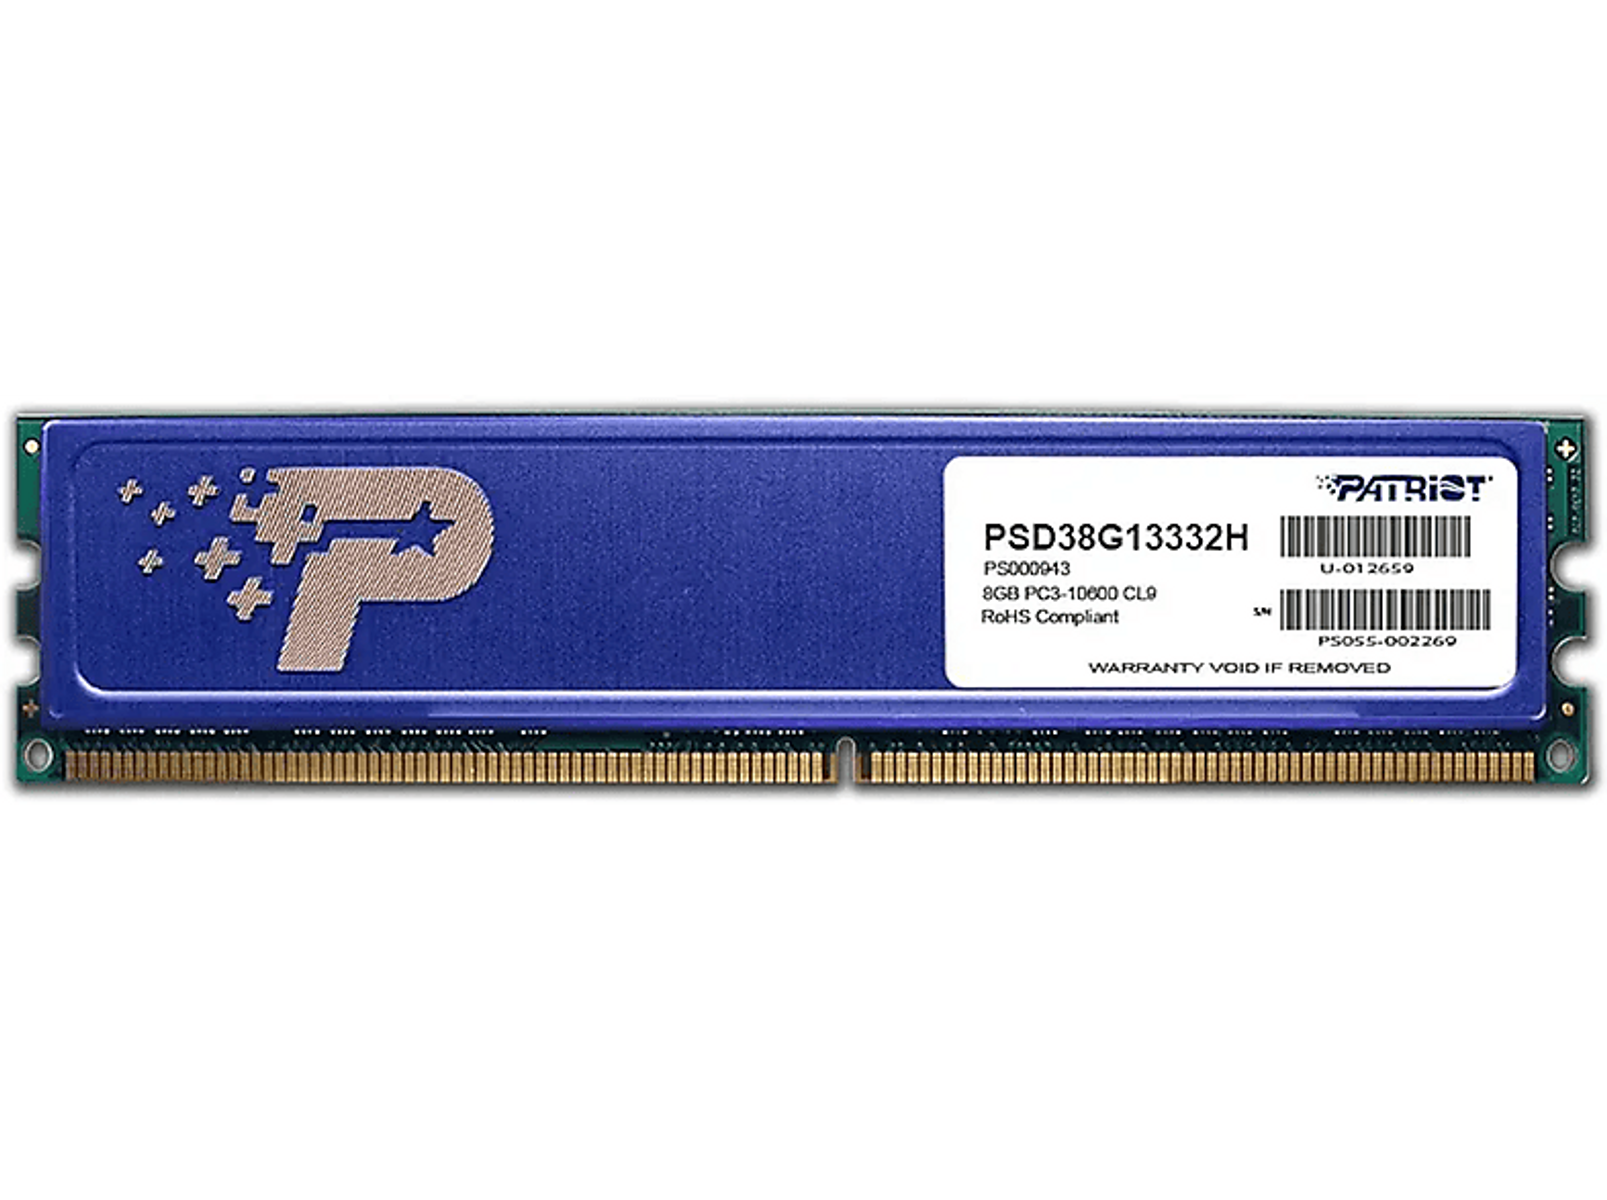 PATRIOT PSD38G13332H 8 Arbeitsspeicher DDR3 GB